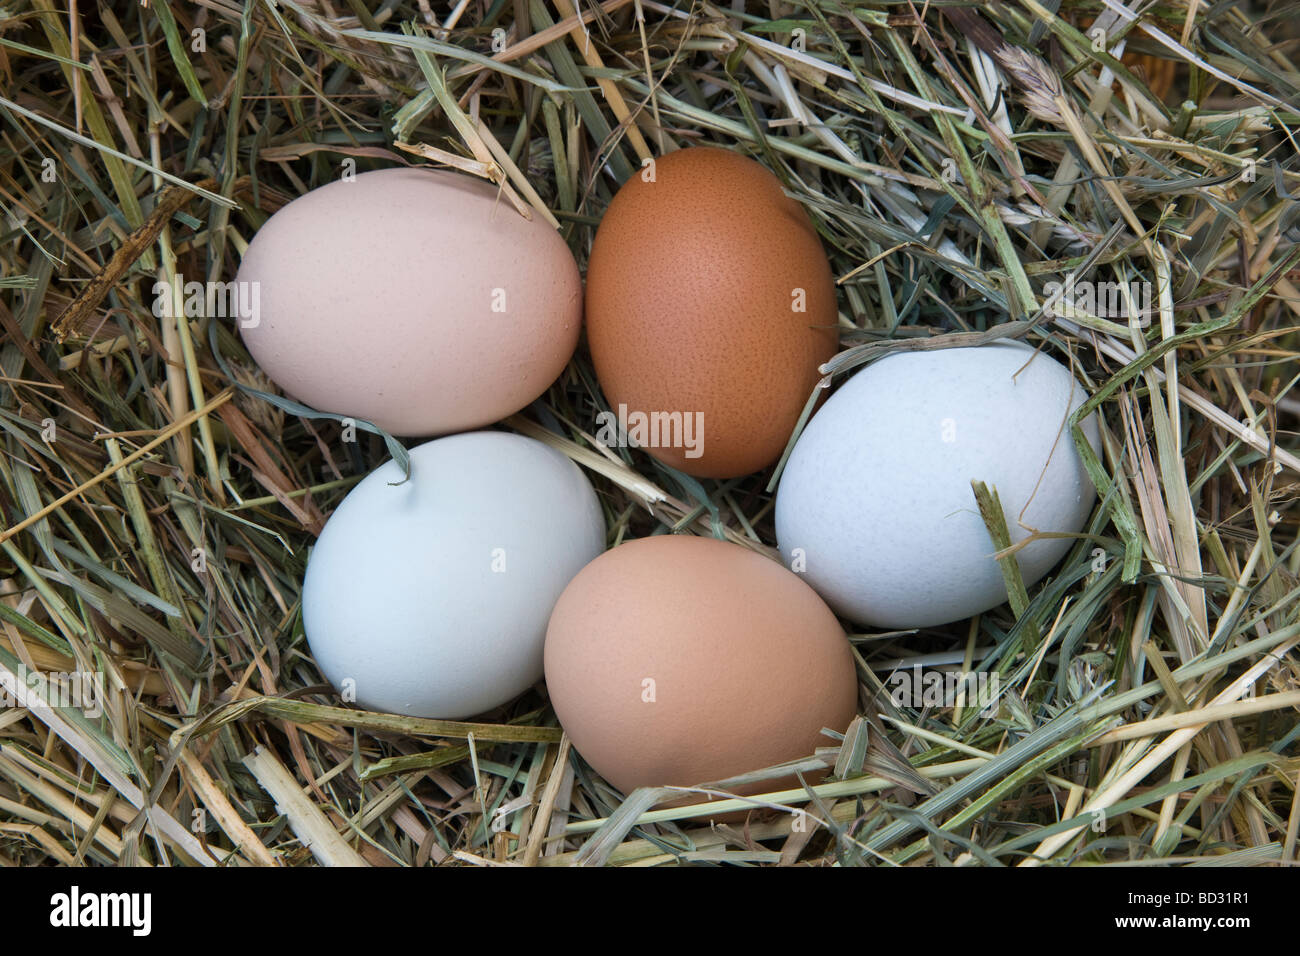 Los huevos de gallina recién sembradas en colores naturales. Foto de stock